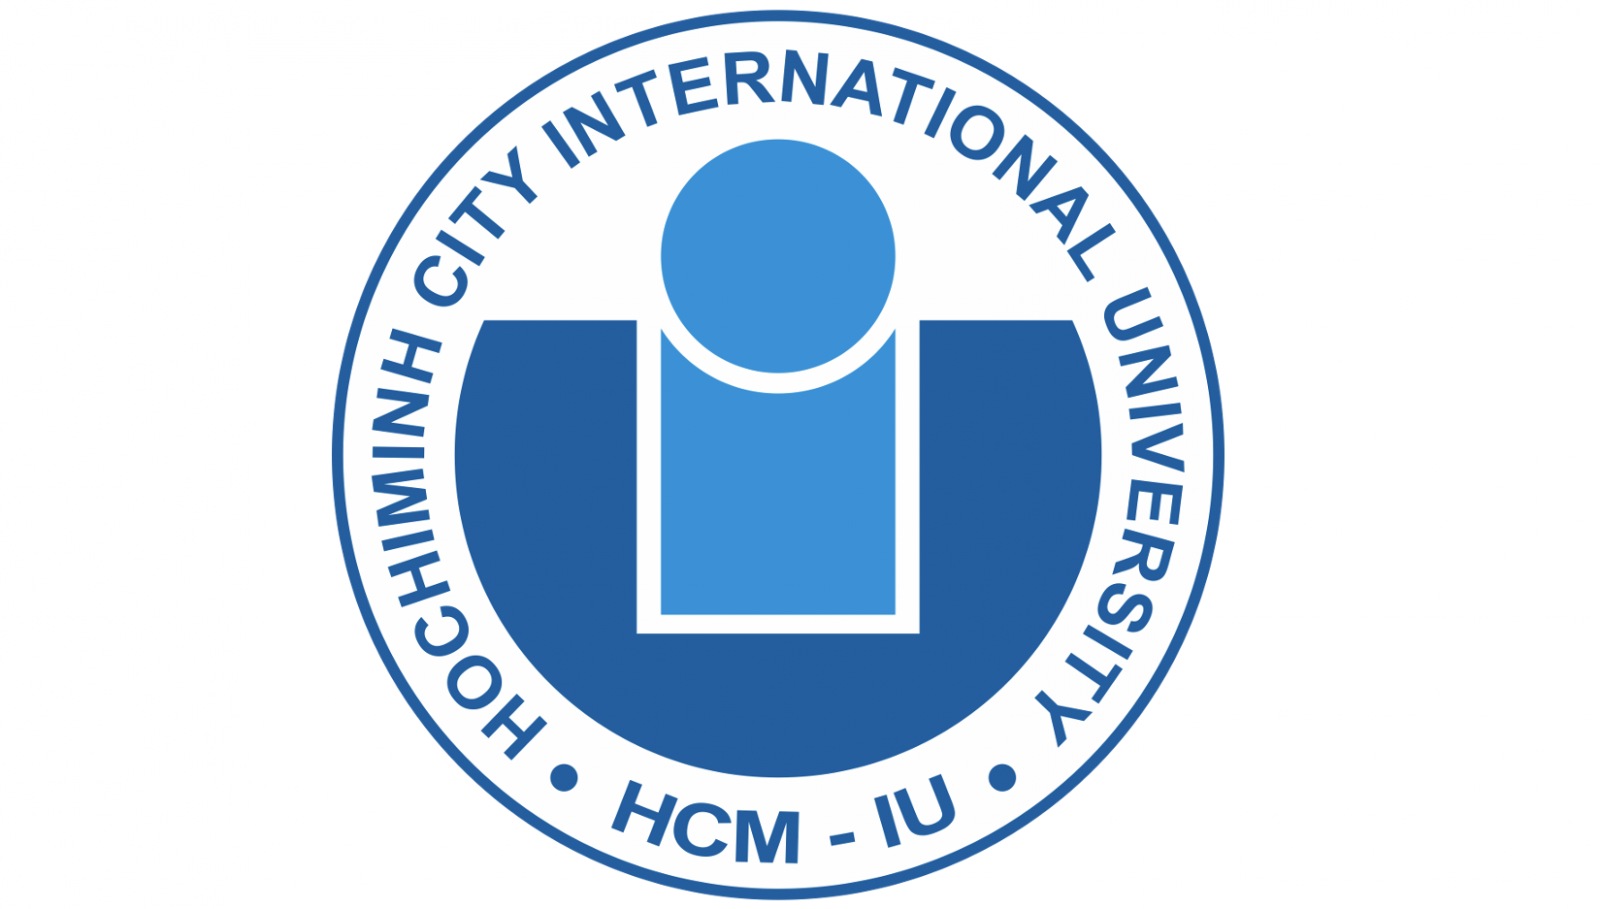 Trường ĐH Quốc tế - IU